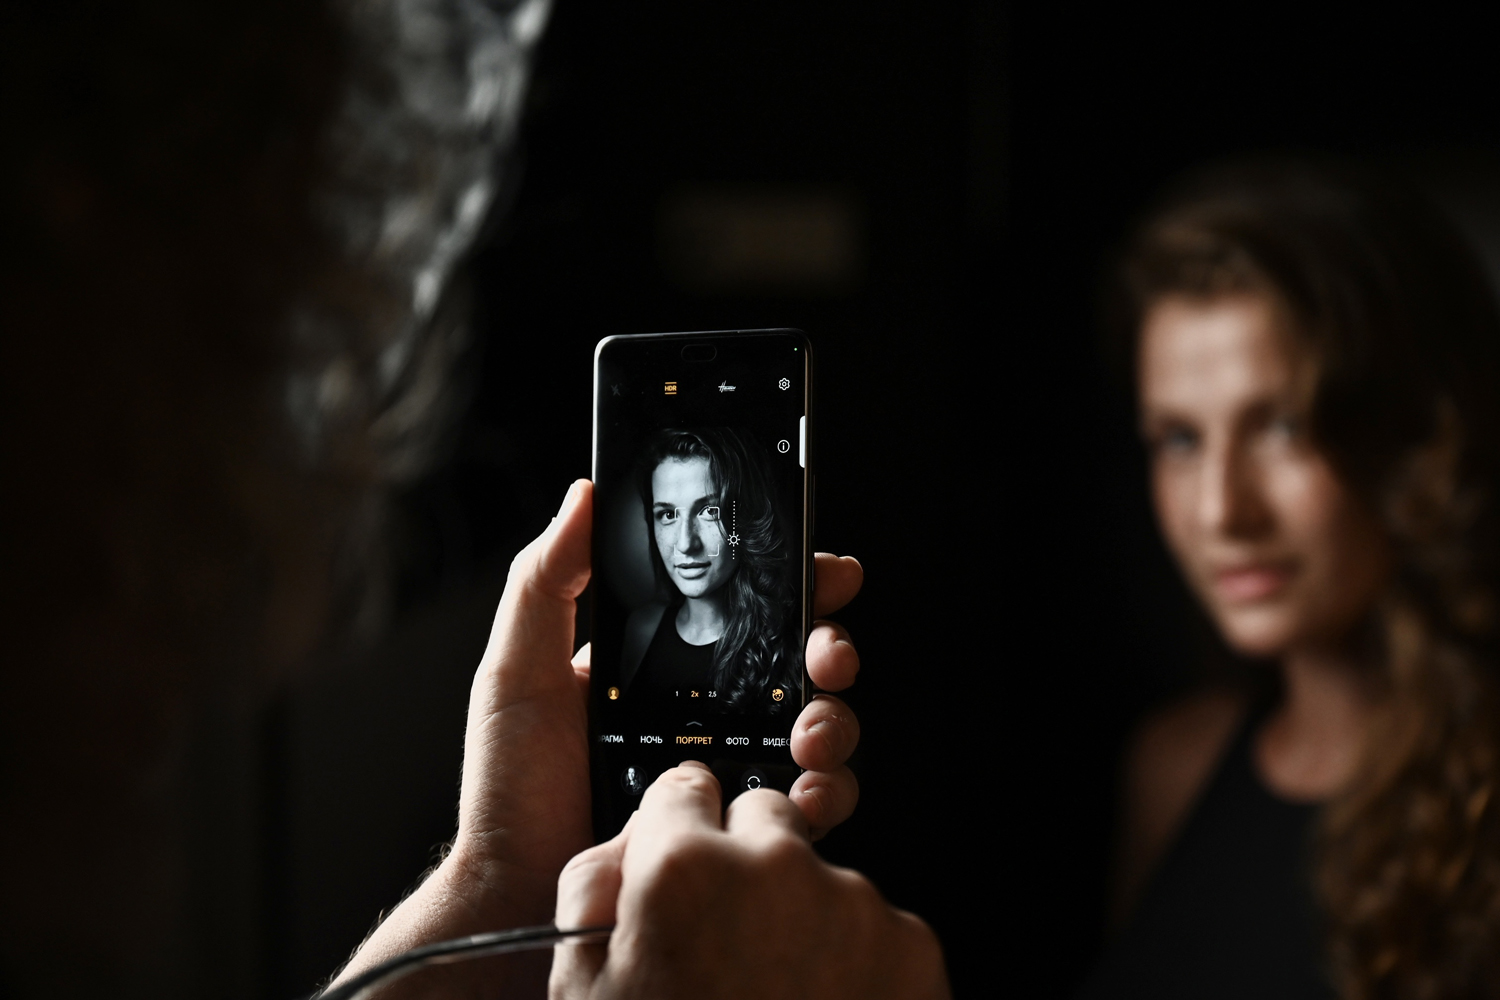 МТС открыла в Кузбассе предзаказ на смартфоны HONOR 200 и 200 Pro для съёмки портретов профессионального качества